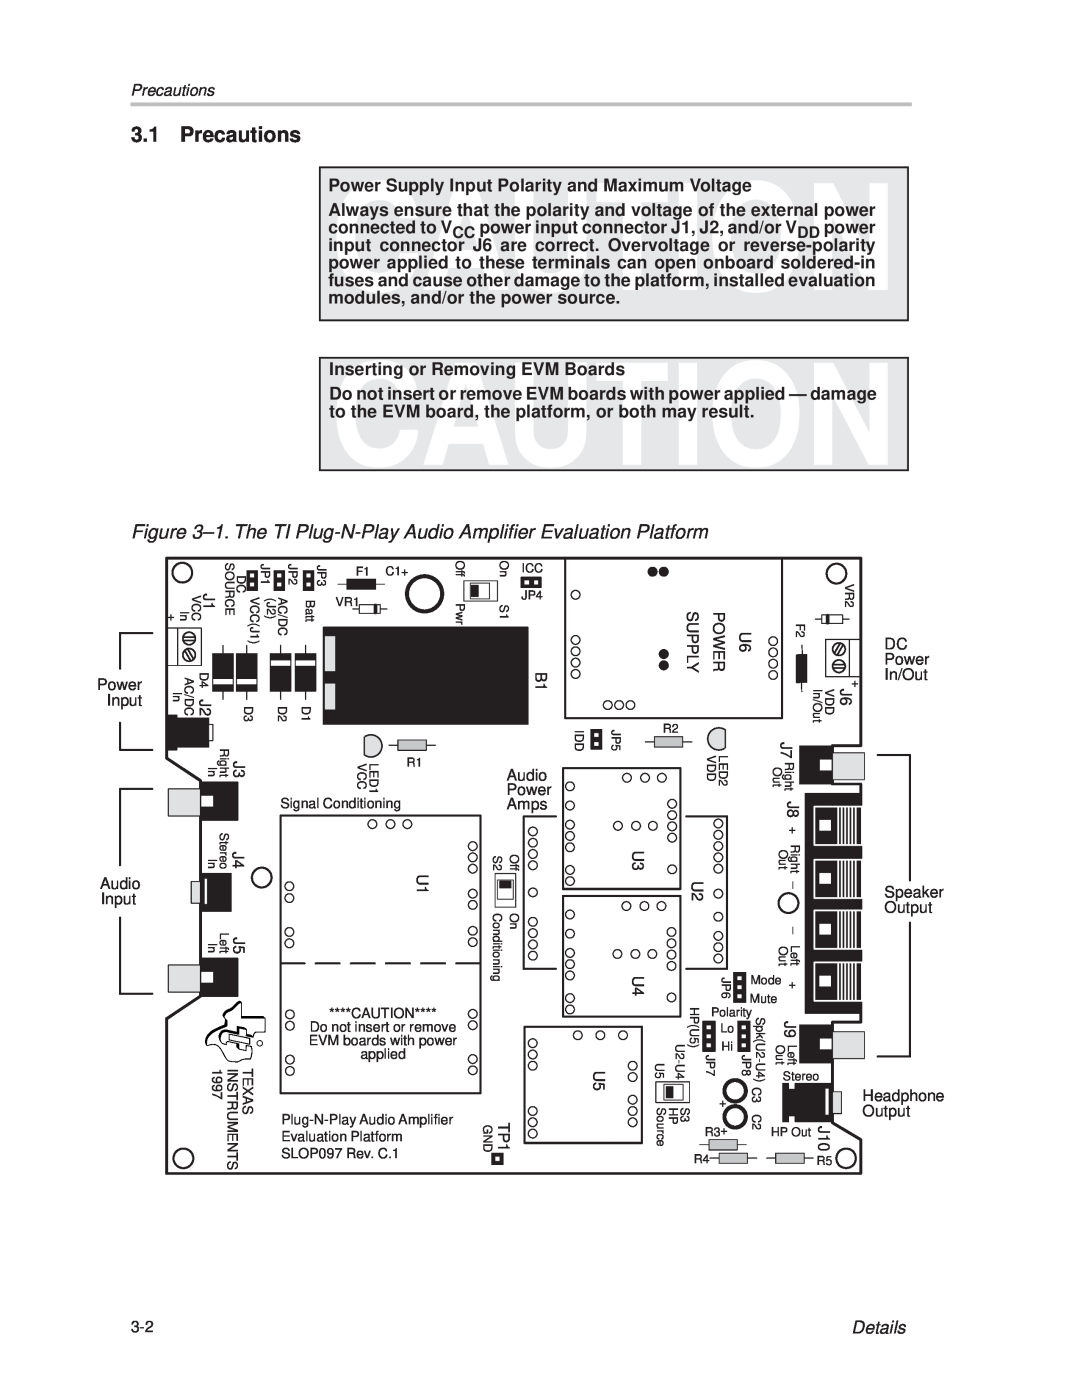 Texas Instruments TPA005D12 manual Precautions, Details 